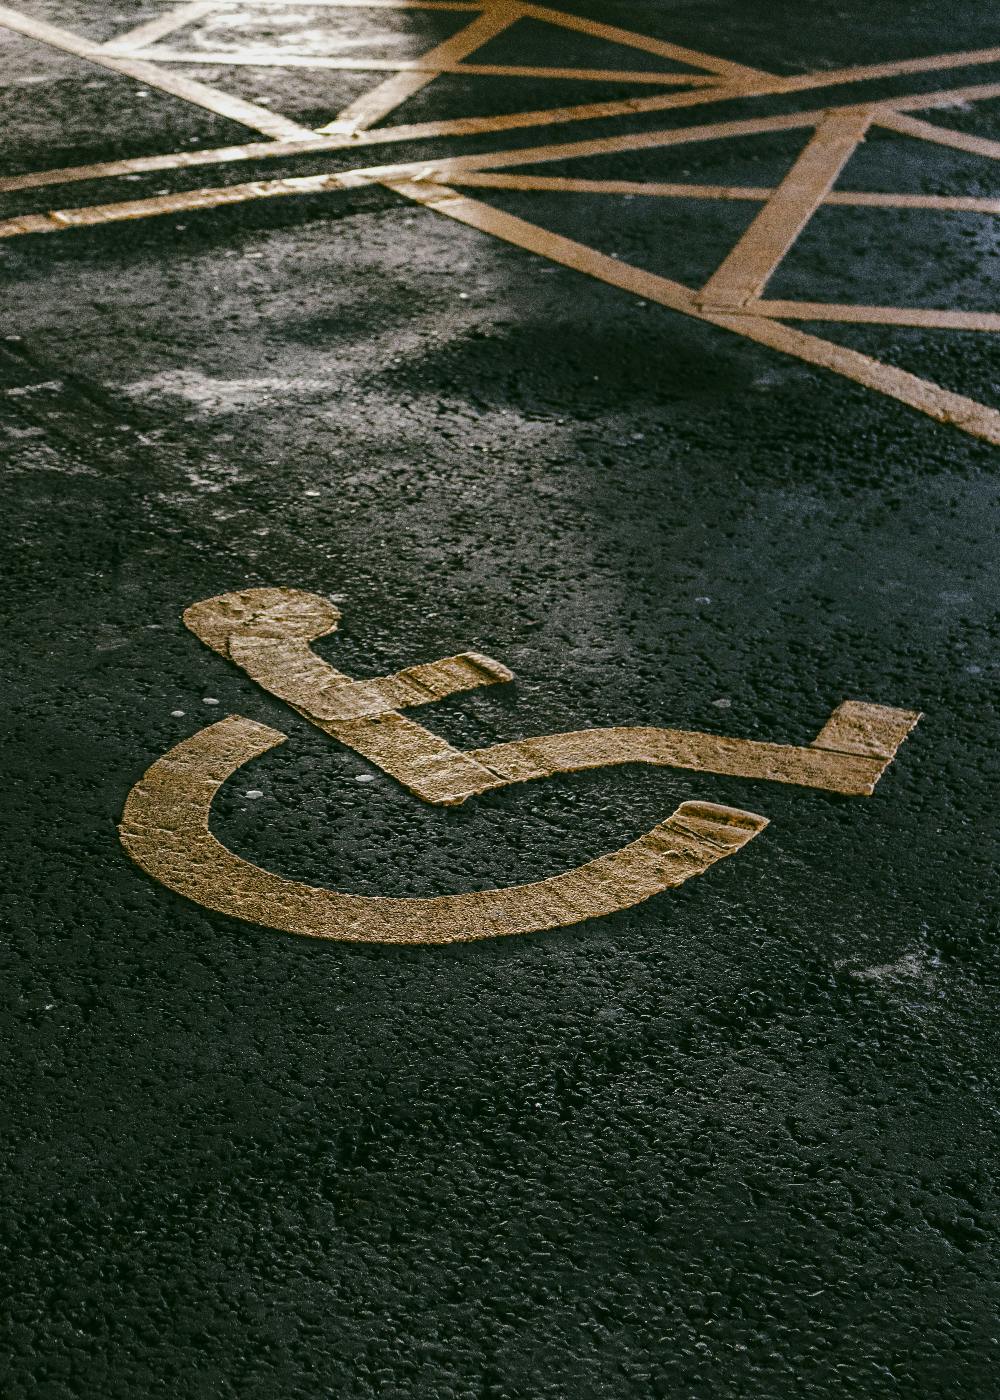 a handicap parking space